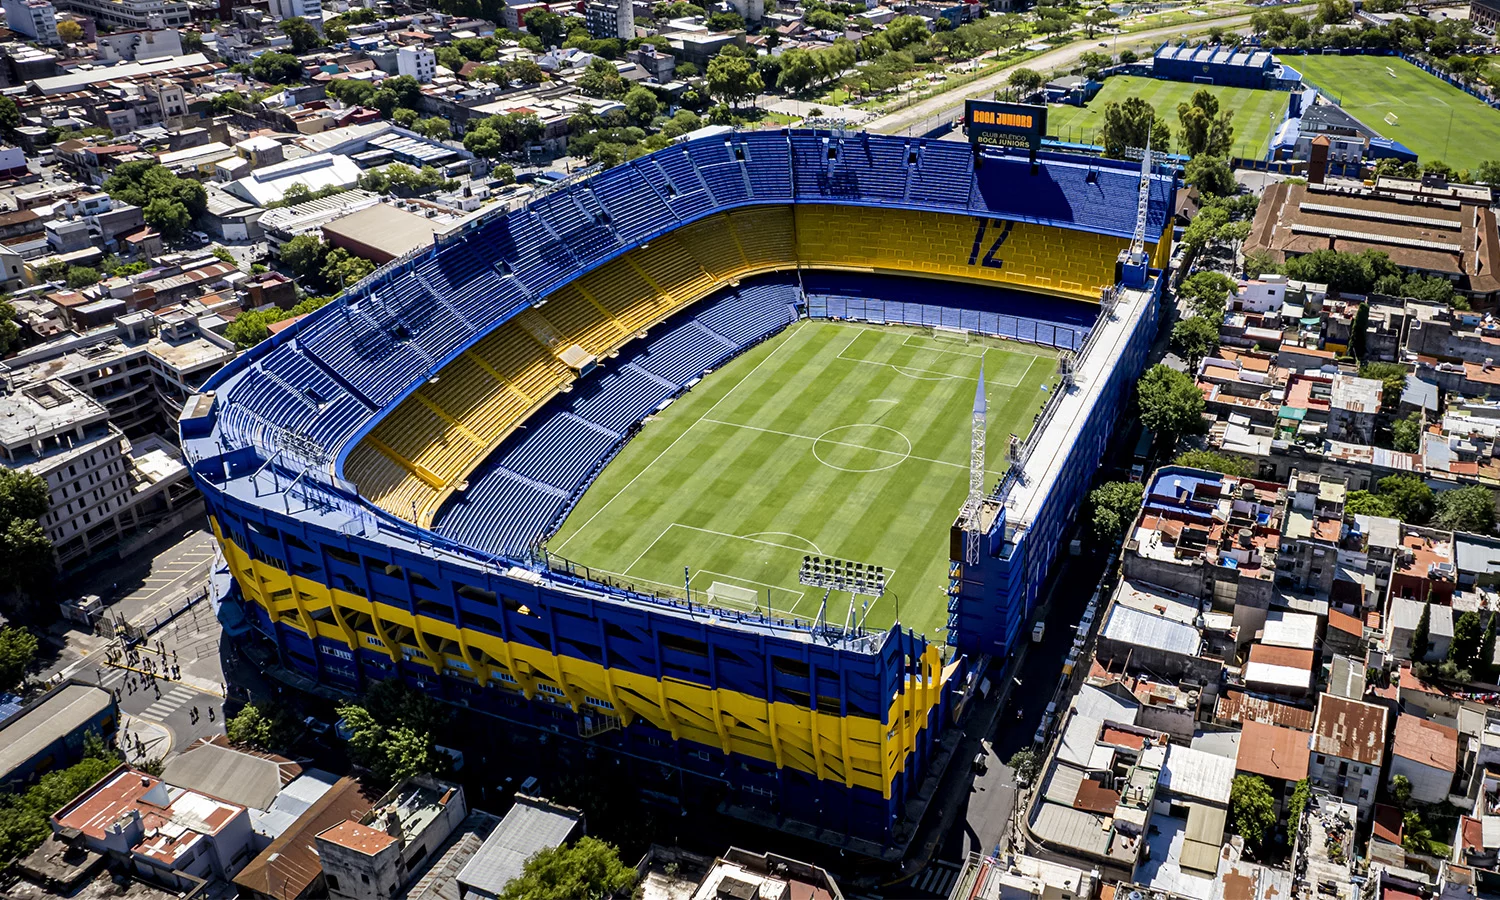 La Bombonera Boca Juniors